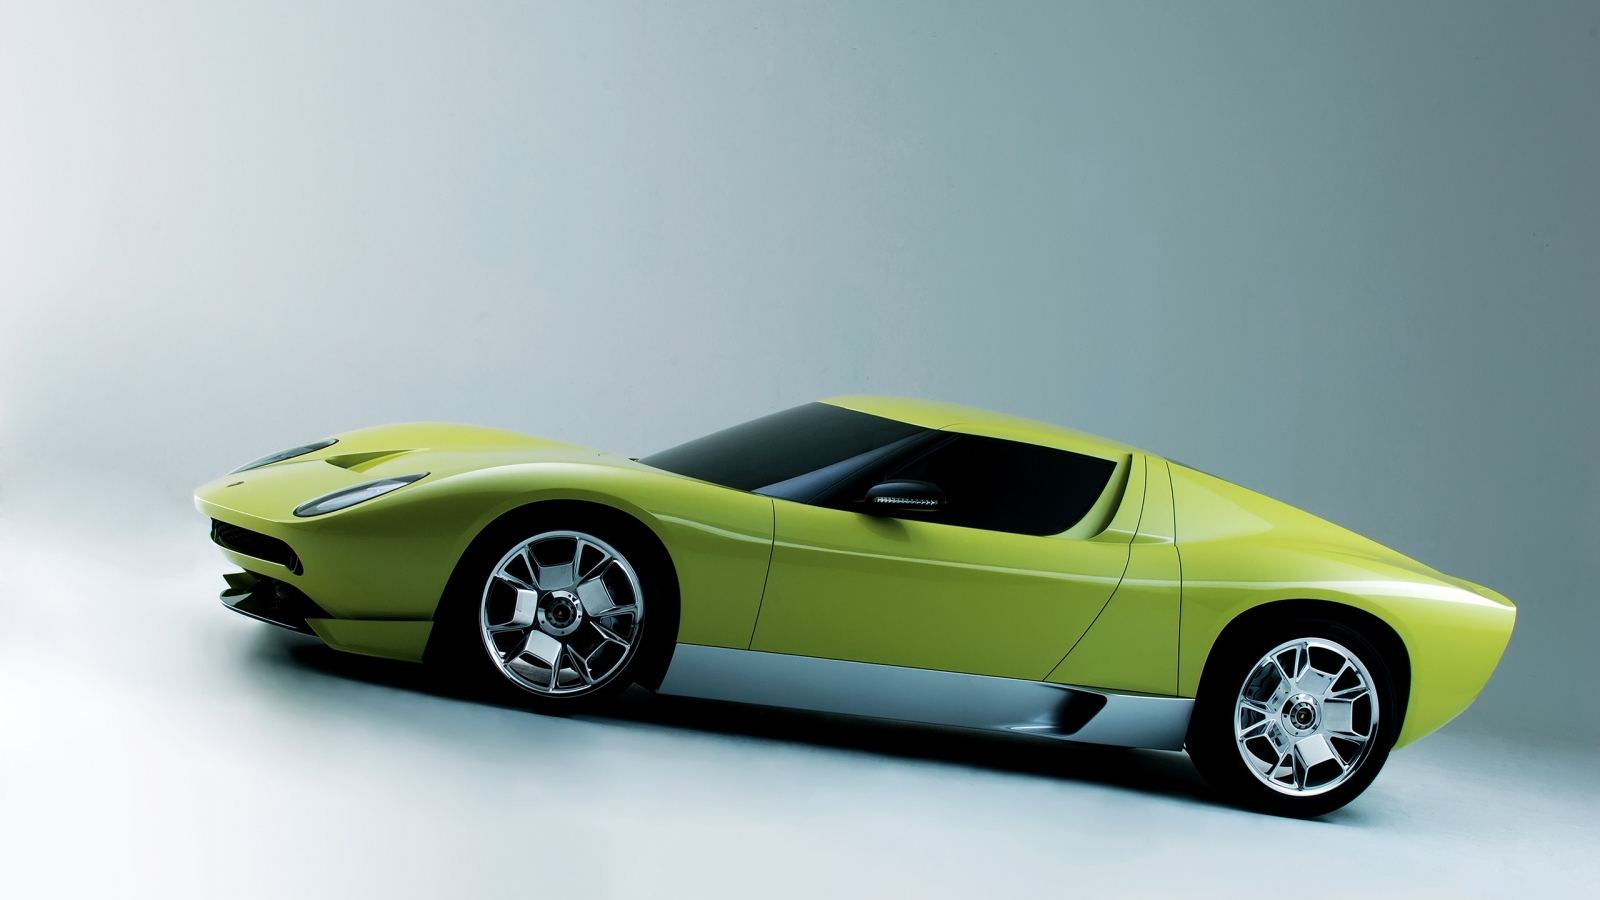 Lamborghini Miura Concept Side for 1600 x 900 HDTV resolution